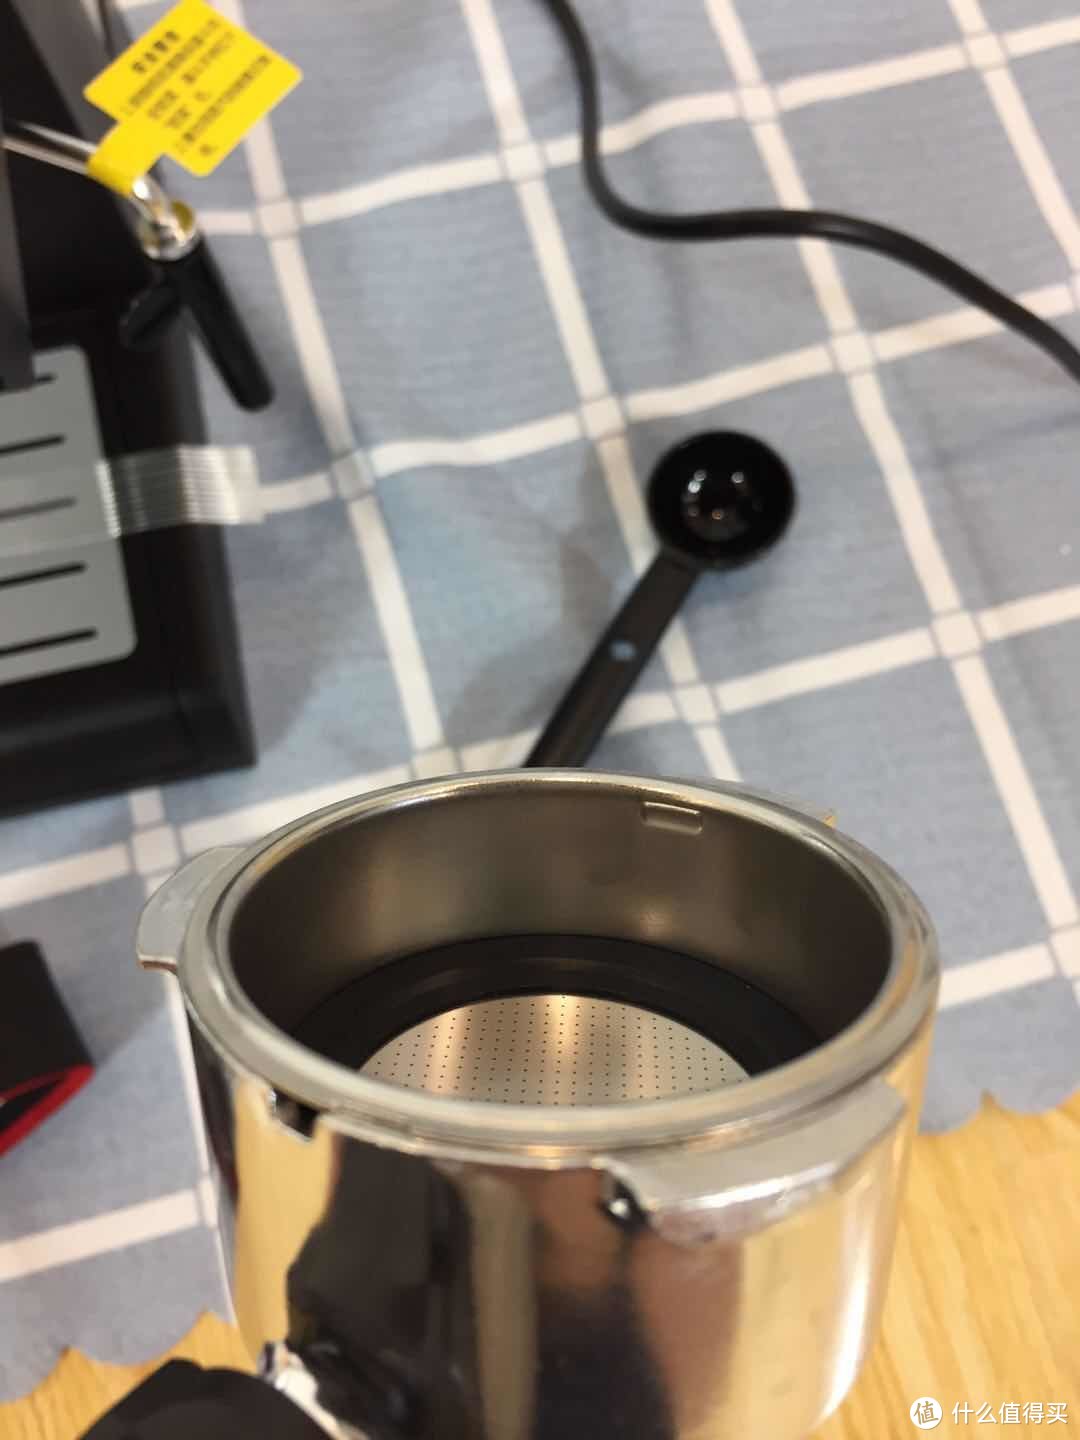 入门级咖啡机:东菱DL-KF6001 开箱晒一晒